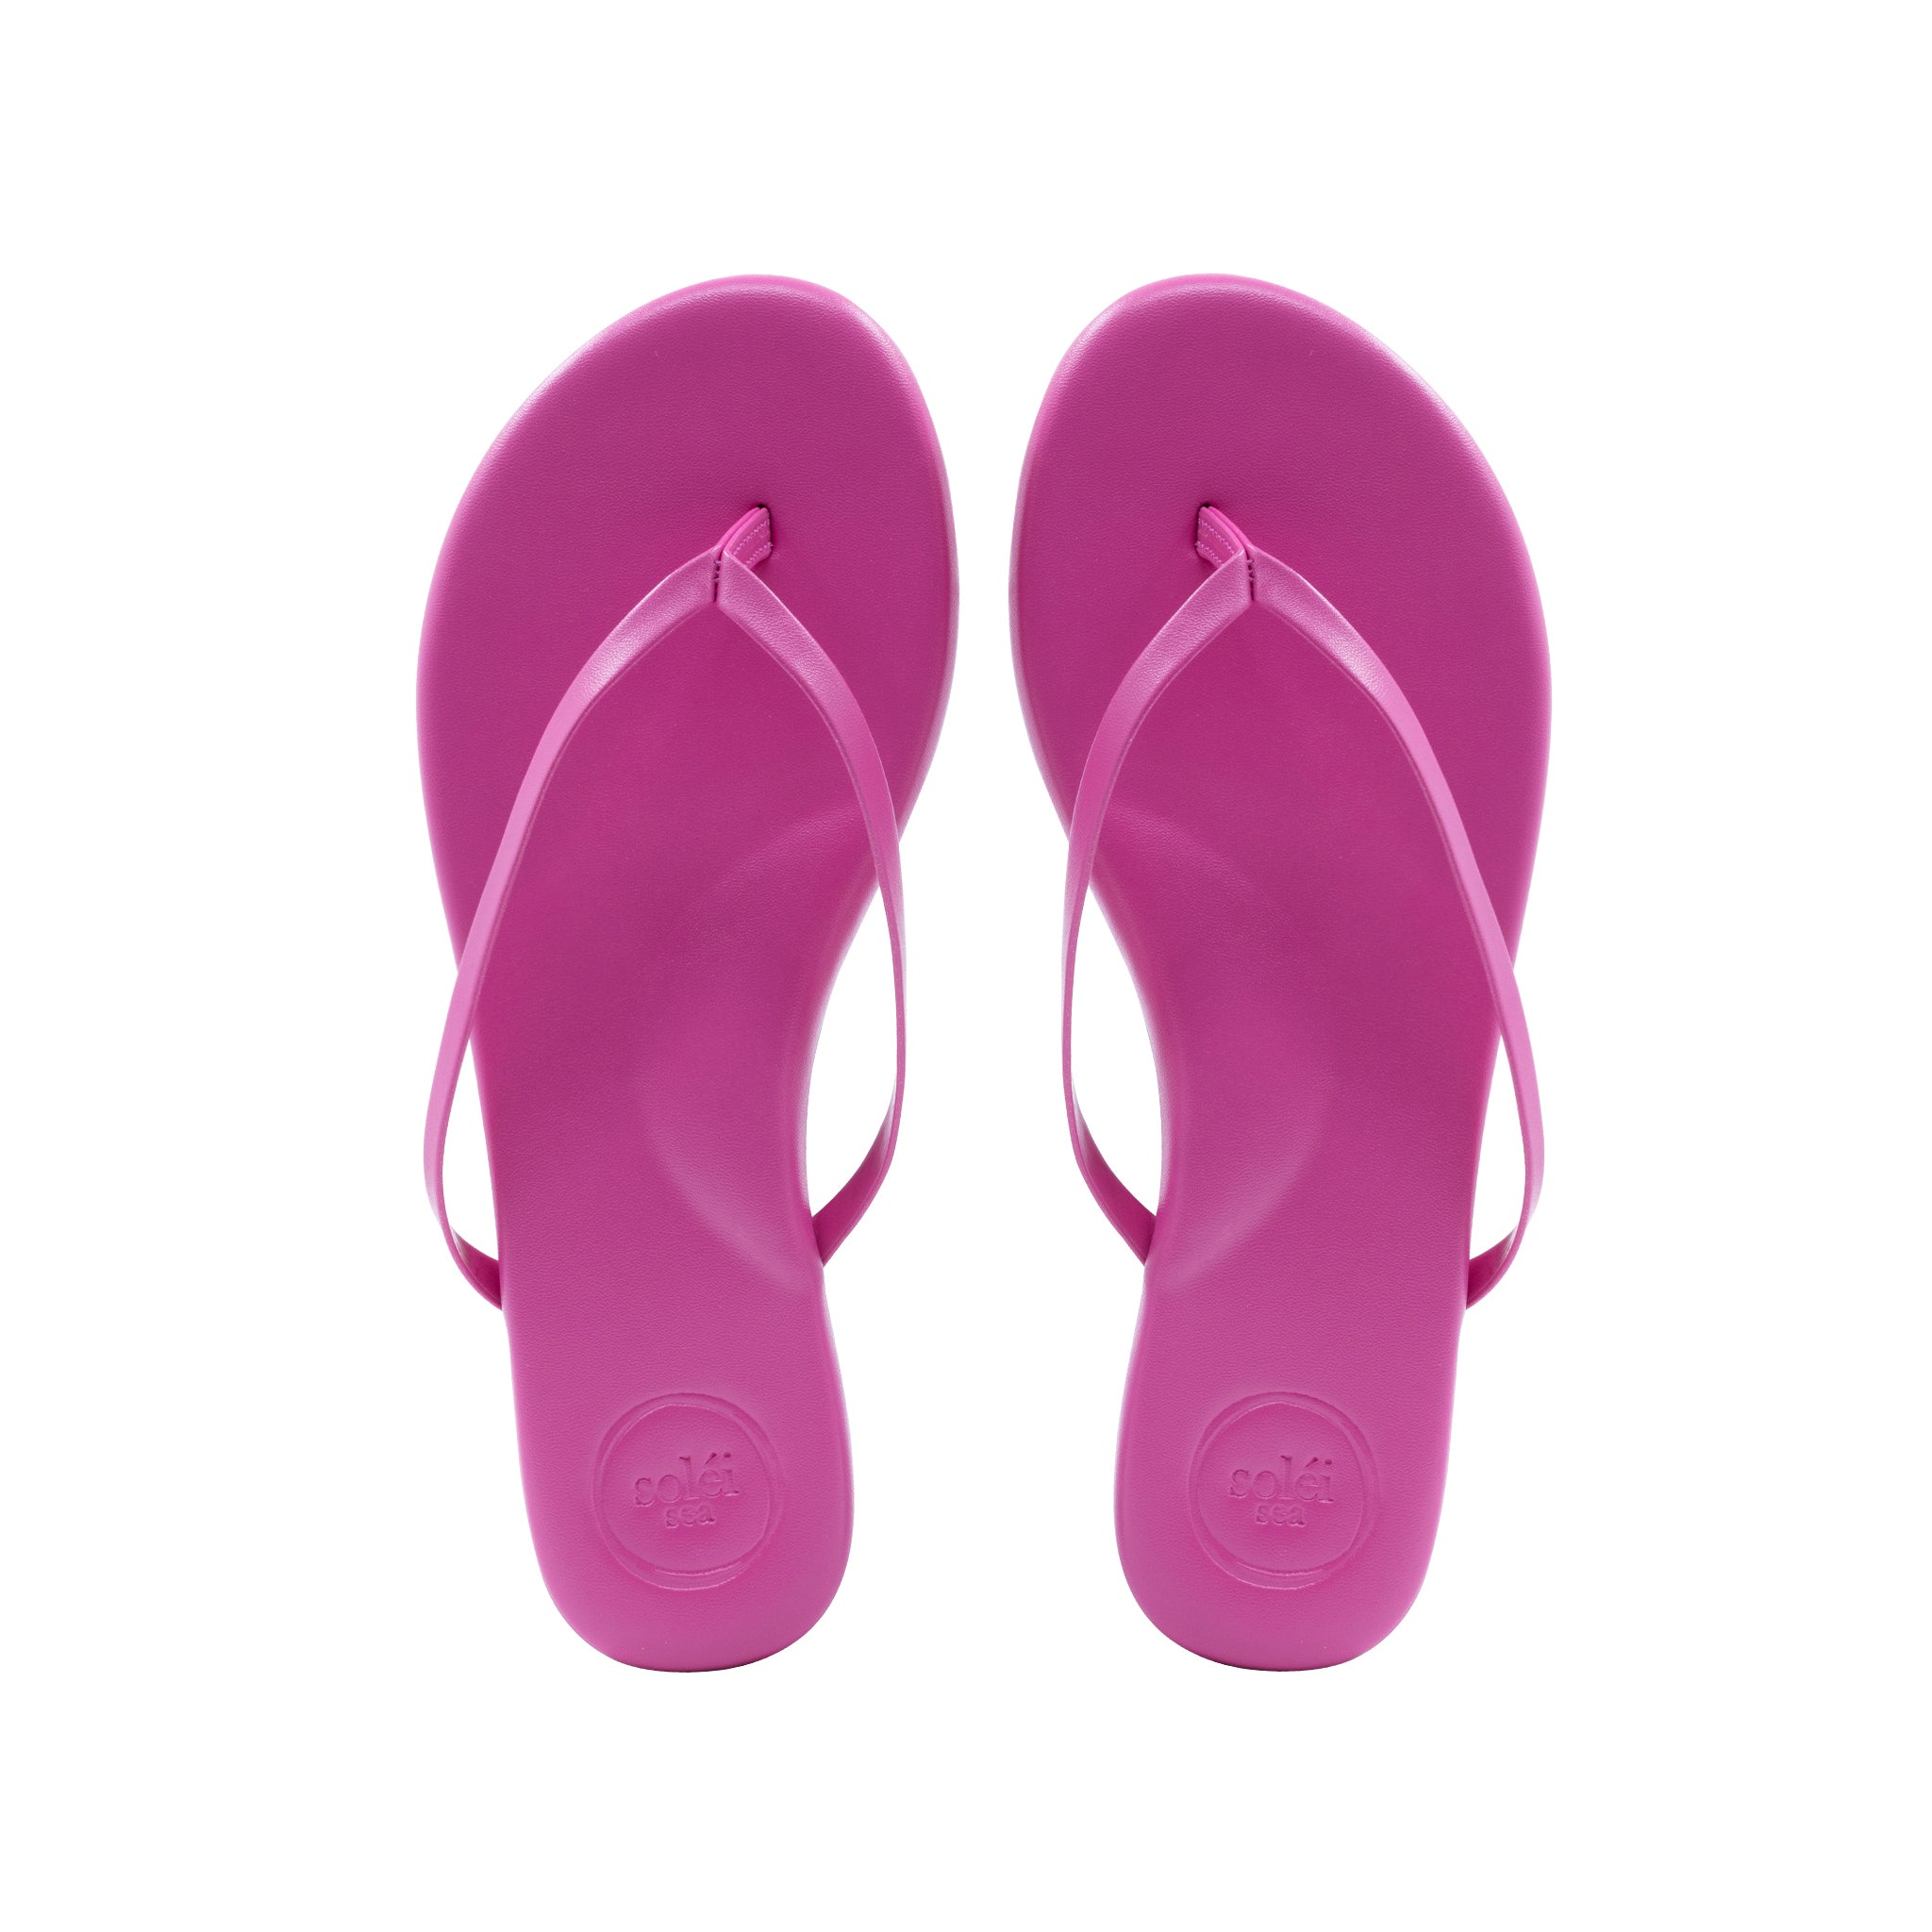 Indie Hot Pink Sandal